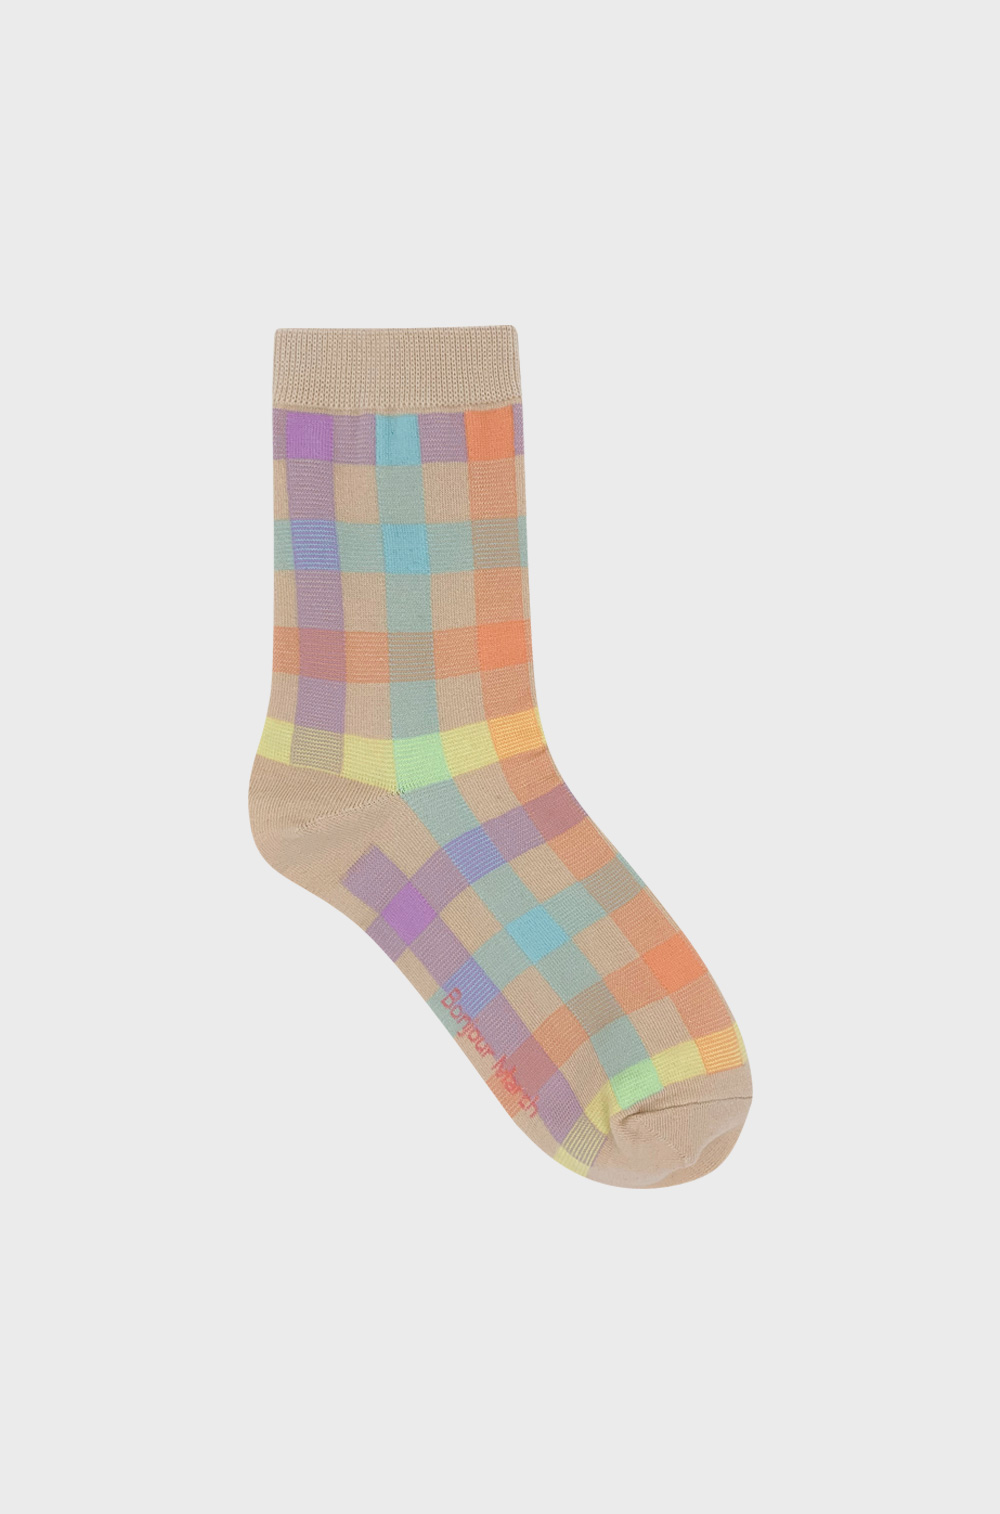 Pastel sherbet socks